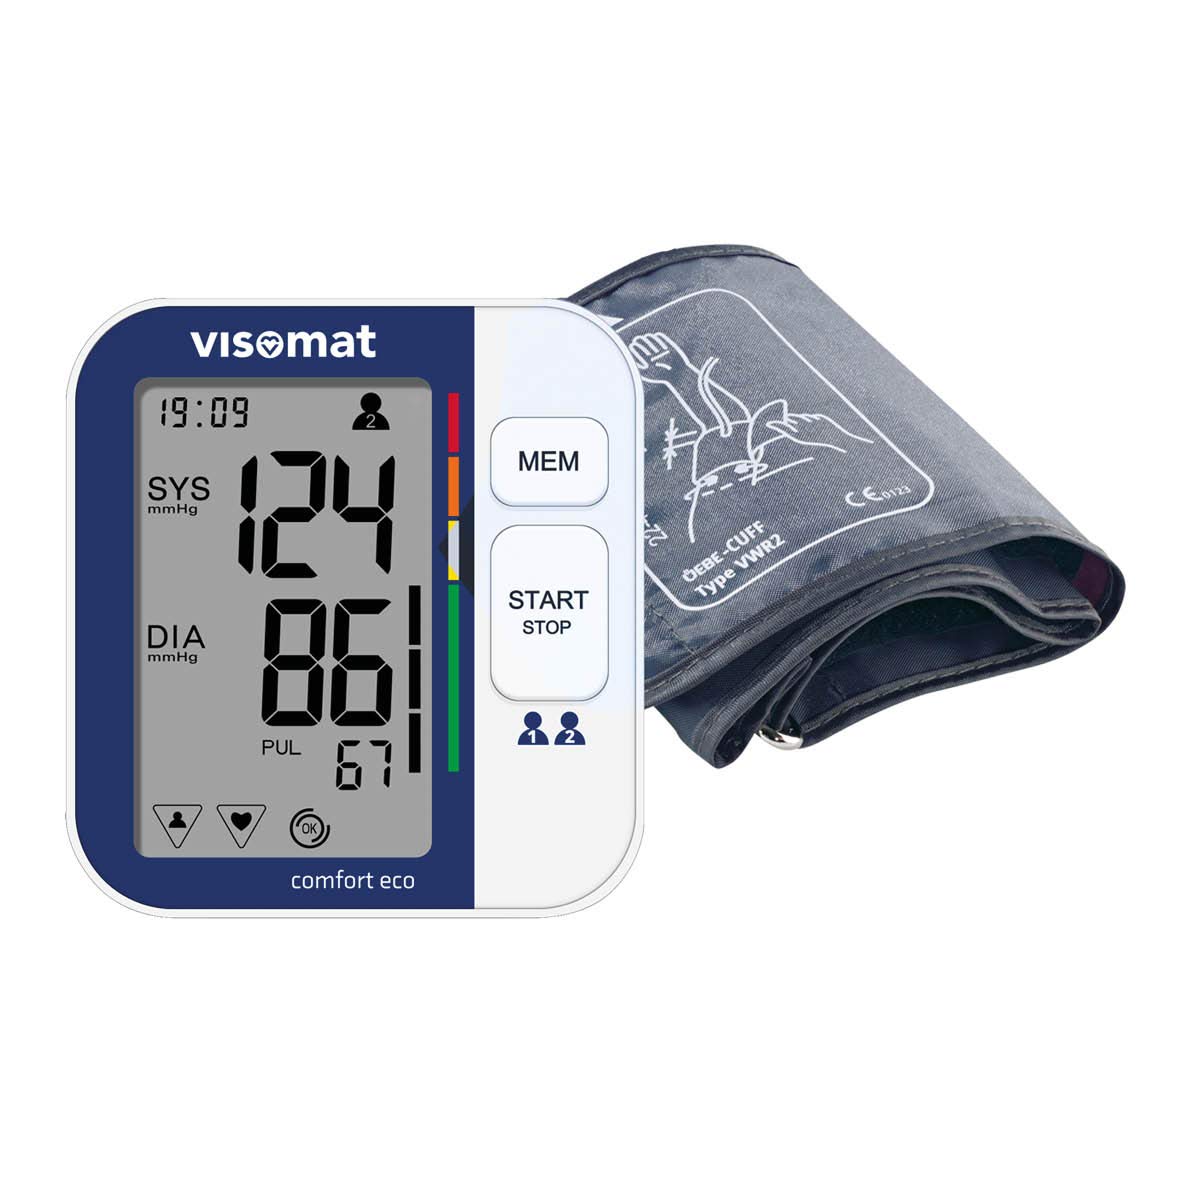 visomat 24026 comfort eco - Oberarm Blutdruckmessgerät, vollautomatische und sichere Blutdruckmessung, validierte Messgenauigkeit, Hersteller mit über 40Jahren Erfahrung, 1 Stück (1er Pack)